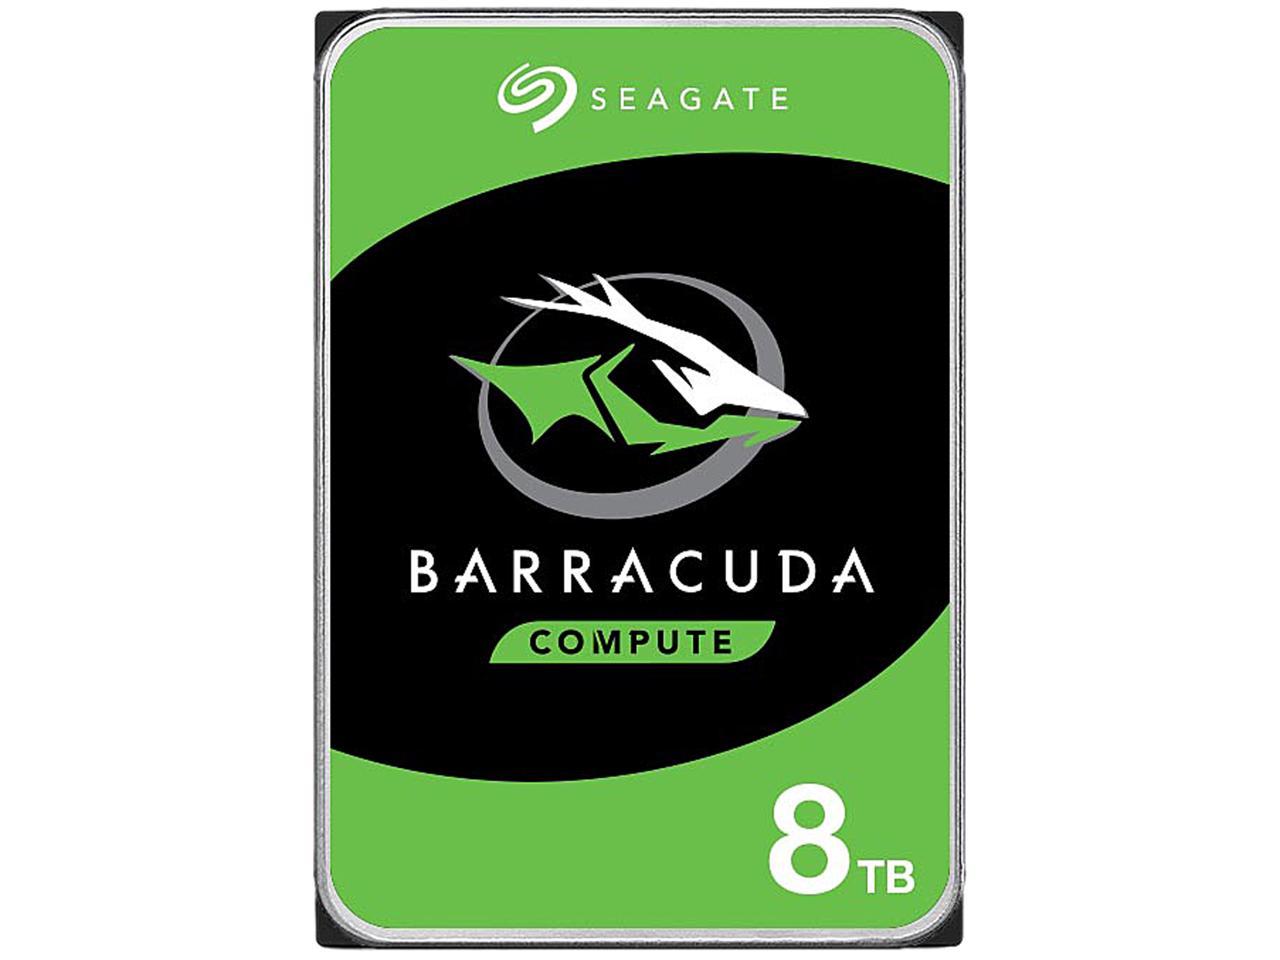 Seagate BarraCuda 8TB 5400 RPM 3.5" Hard Drive $129.99